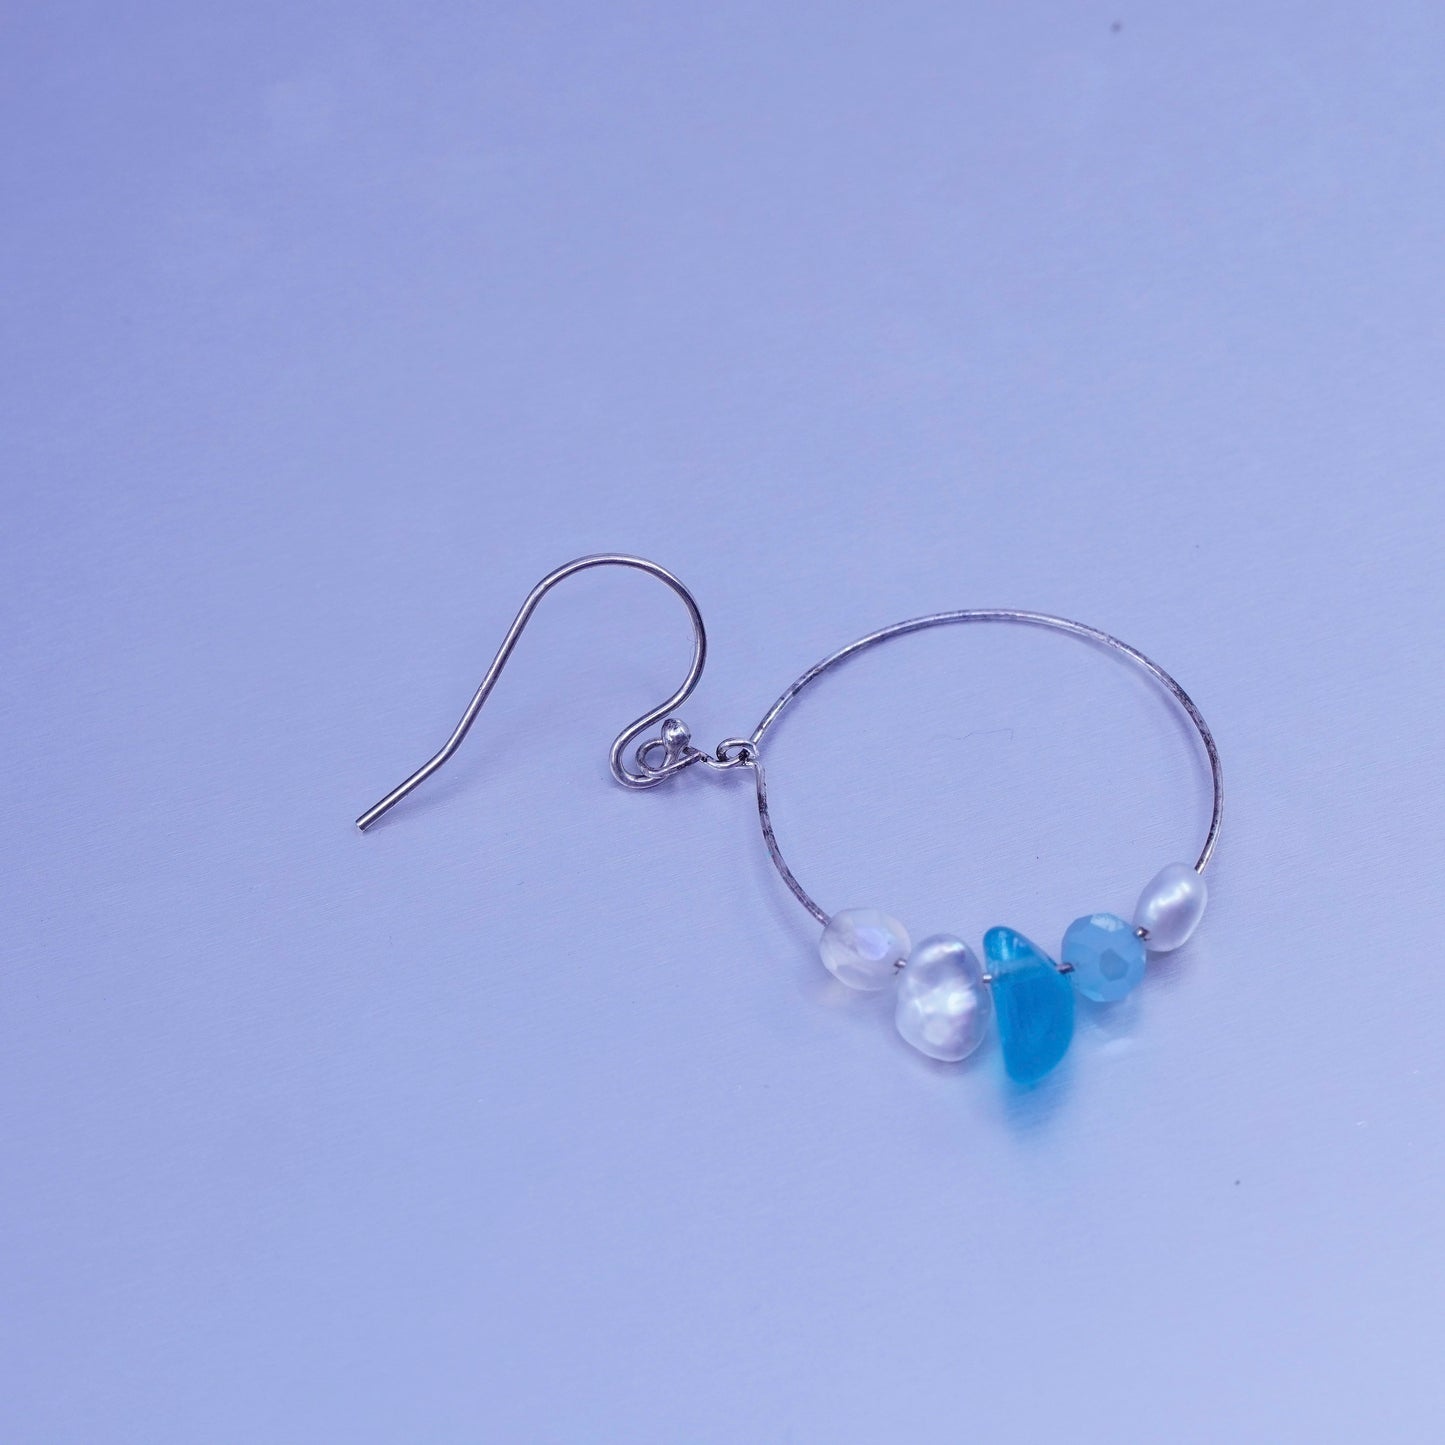 0.75”, vintage Sterling silver handmade earrings, 925 simple hoops and pearl